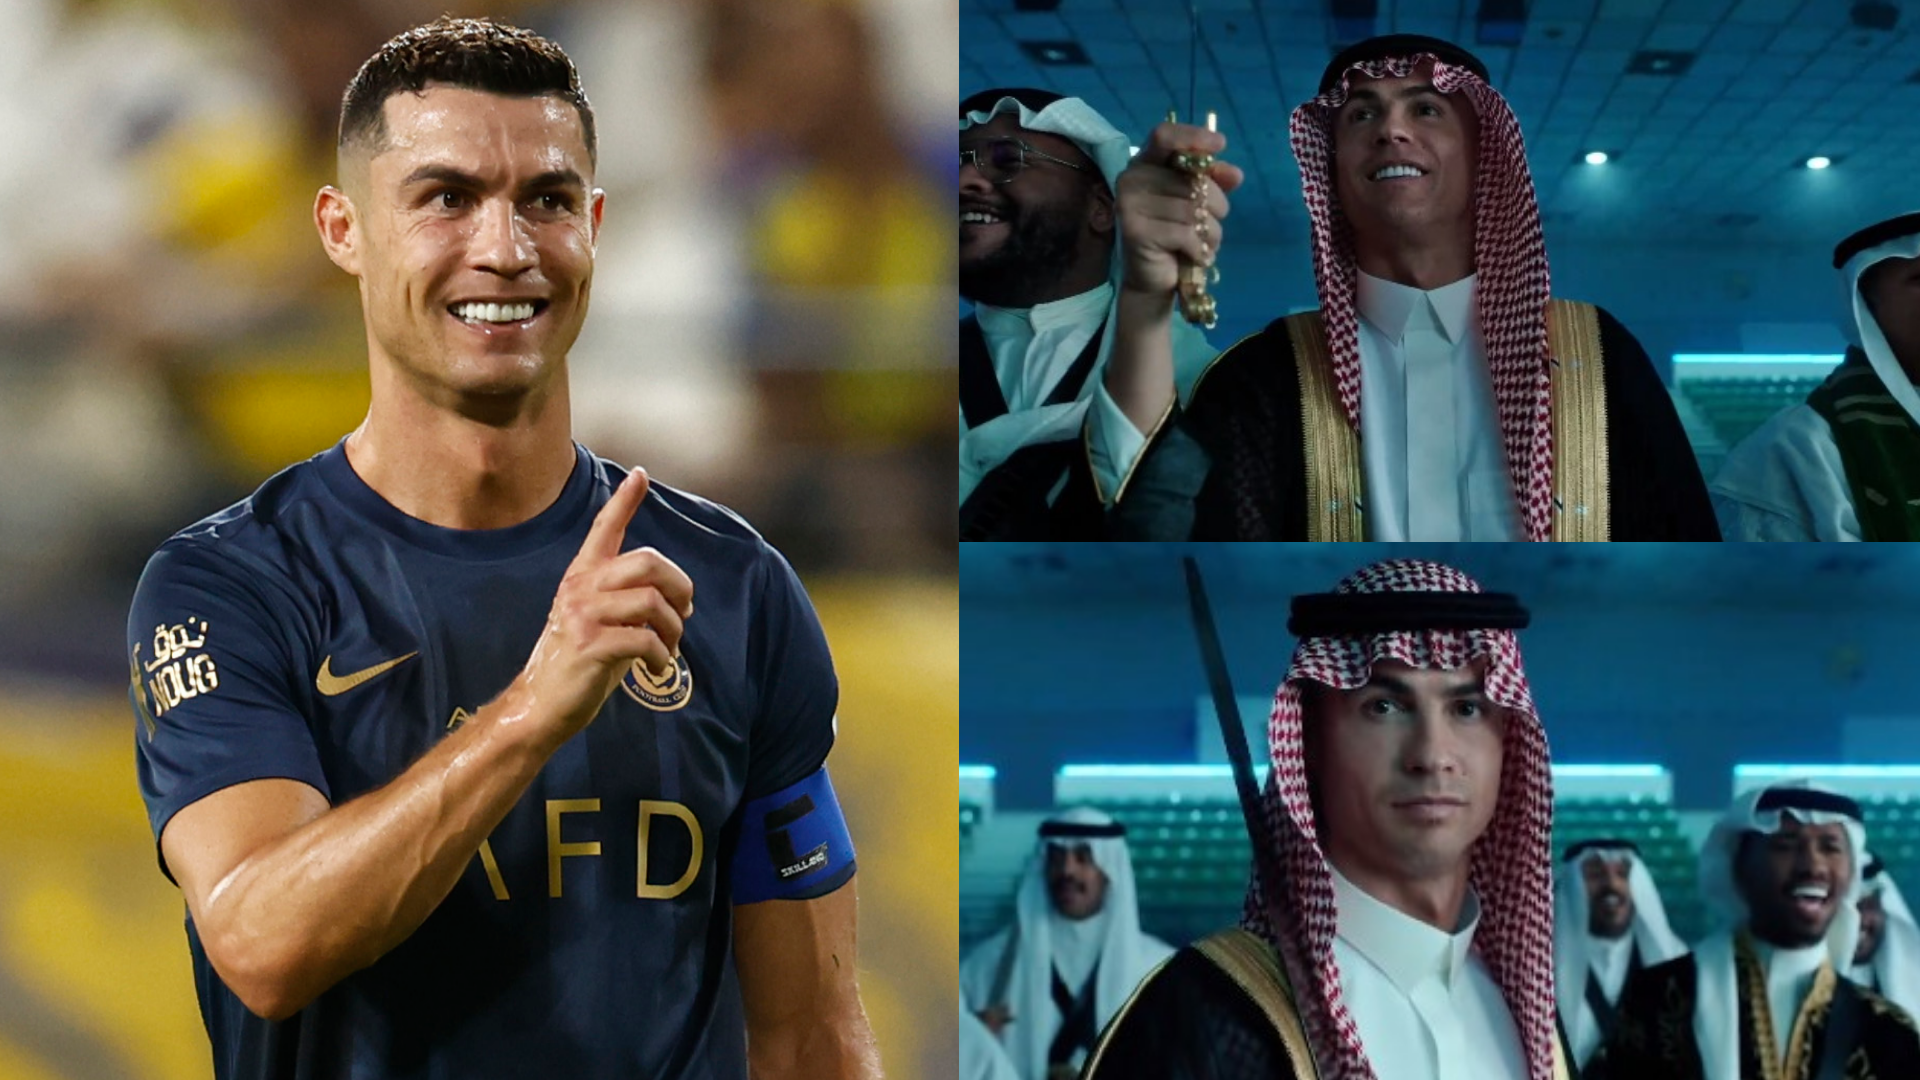 VIDÉO - Cristiano Ronaldo avec l’habit traditionnel saoudien et une épée en main